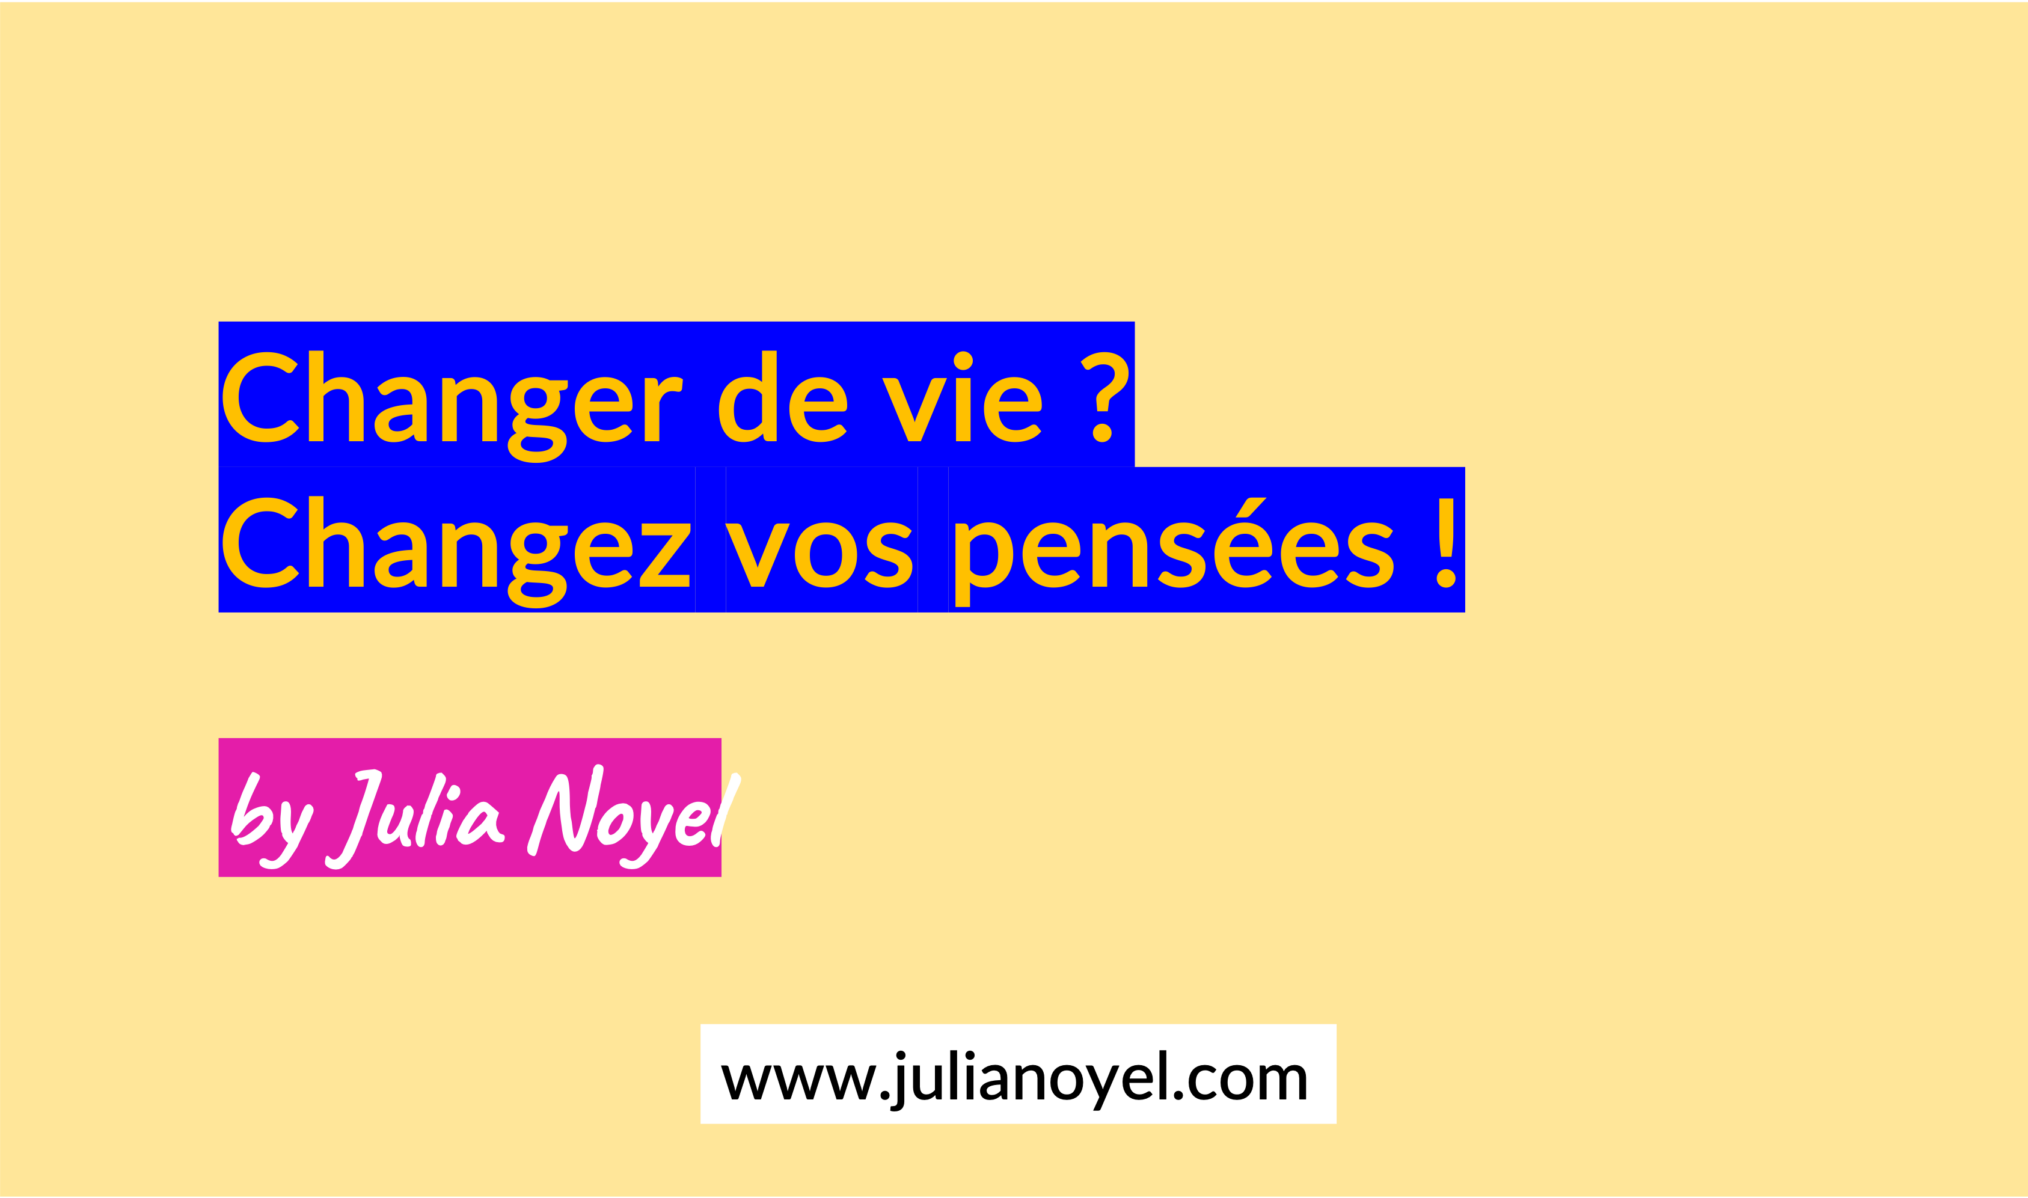 Changer de vie ? Changez vos pensées ! by Julia Noyel